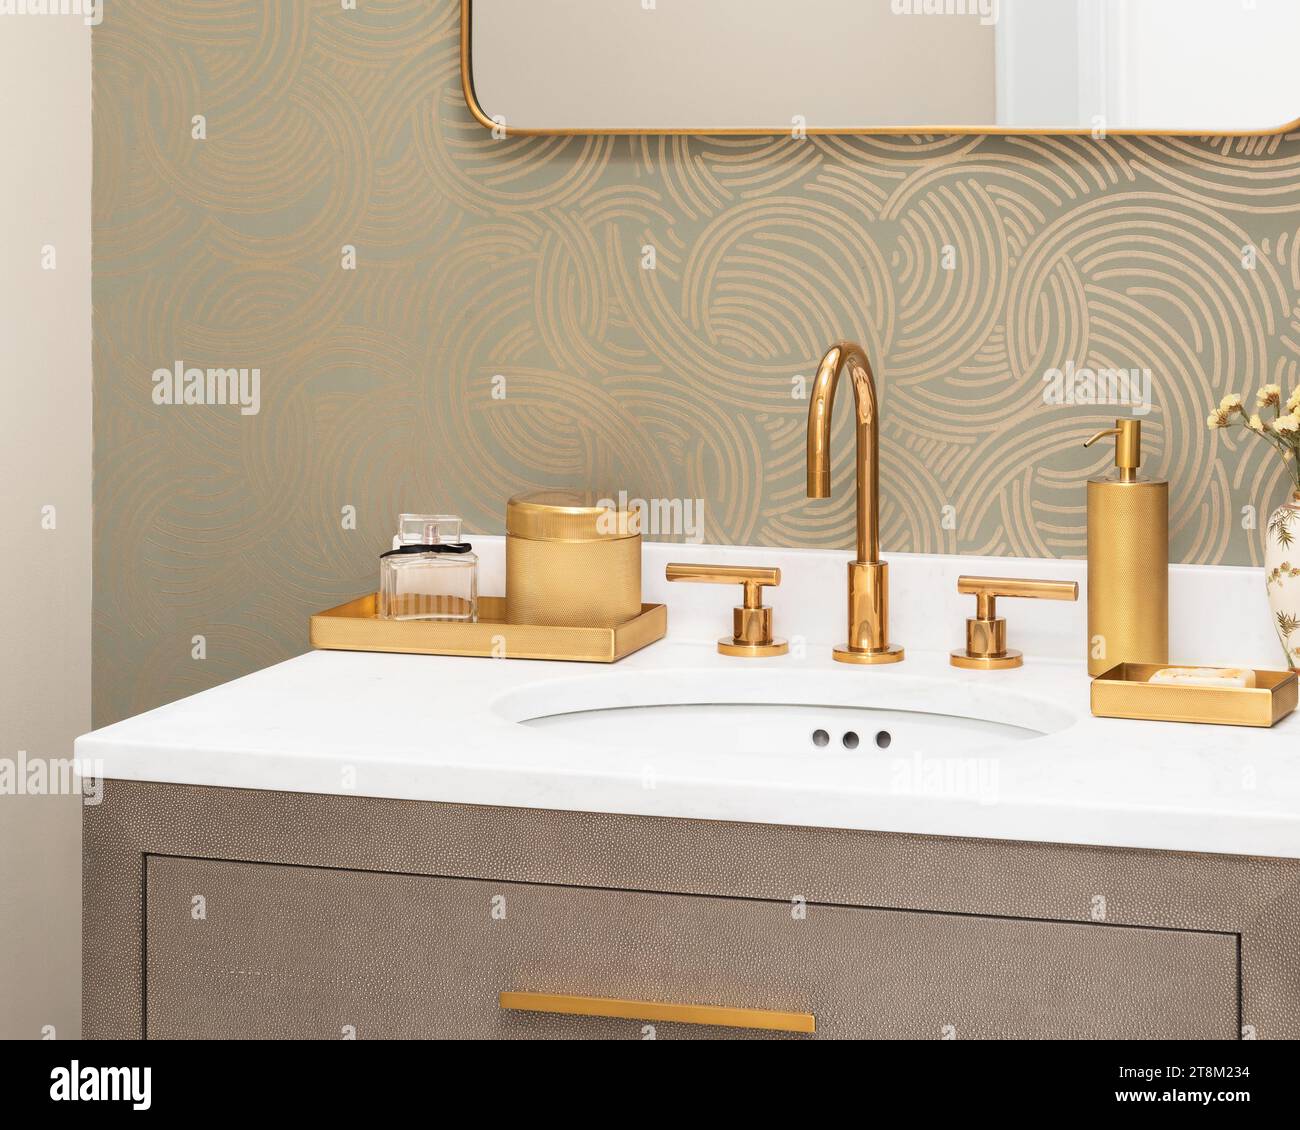 Un détail de lavabo de salle de bain avec un robinet et des décorations en or, un papier peint à motifs, un comptoir en marbre blanc et une armoire en peau de serpent. Banque D'Images